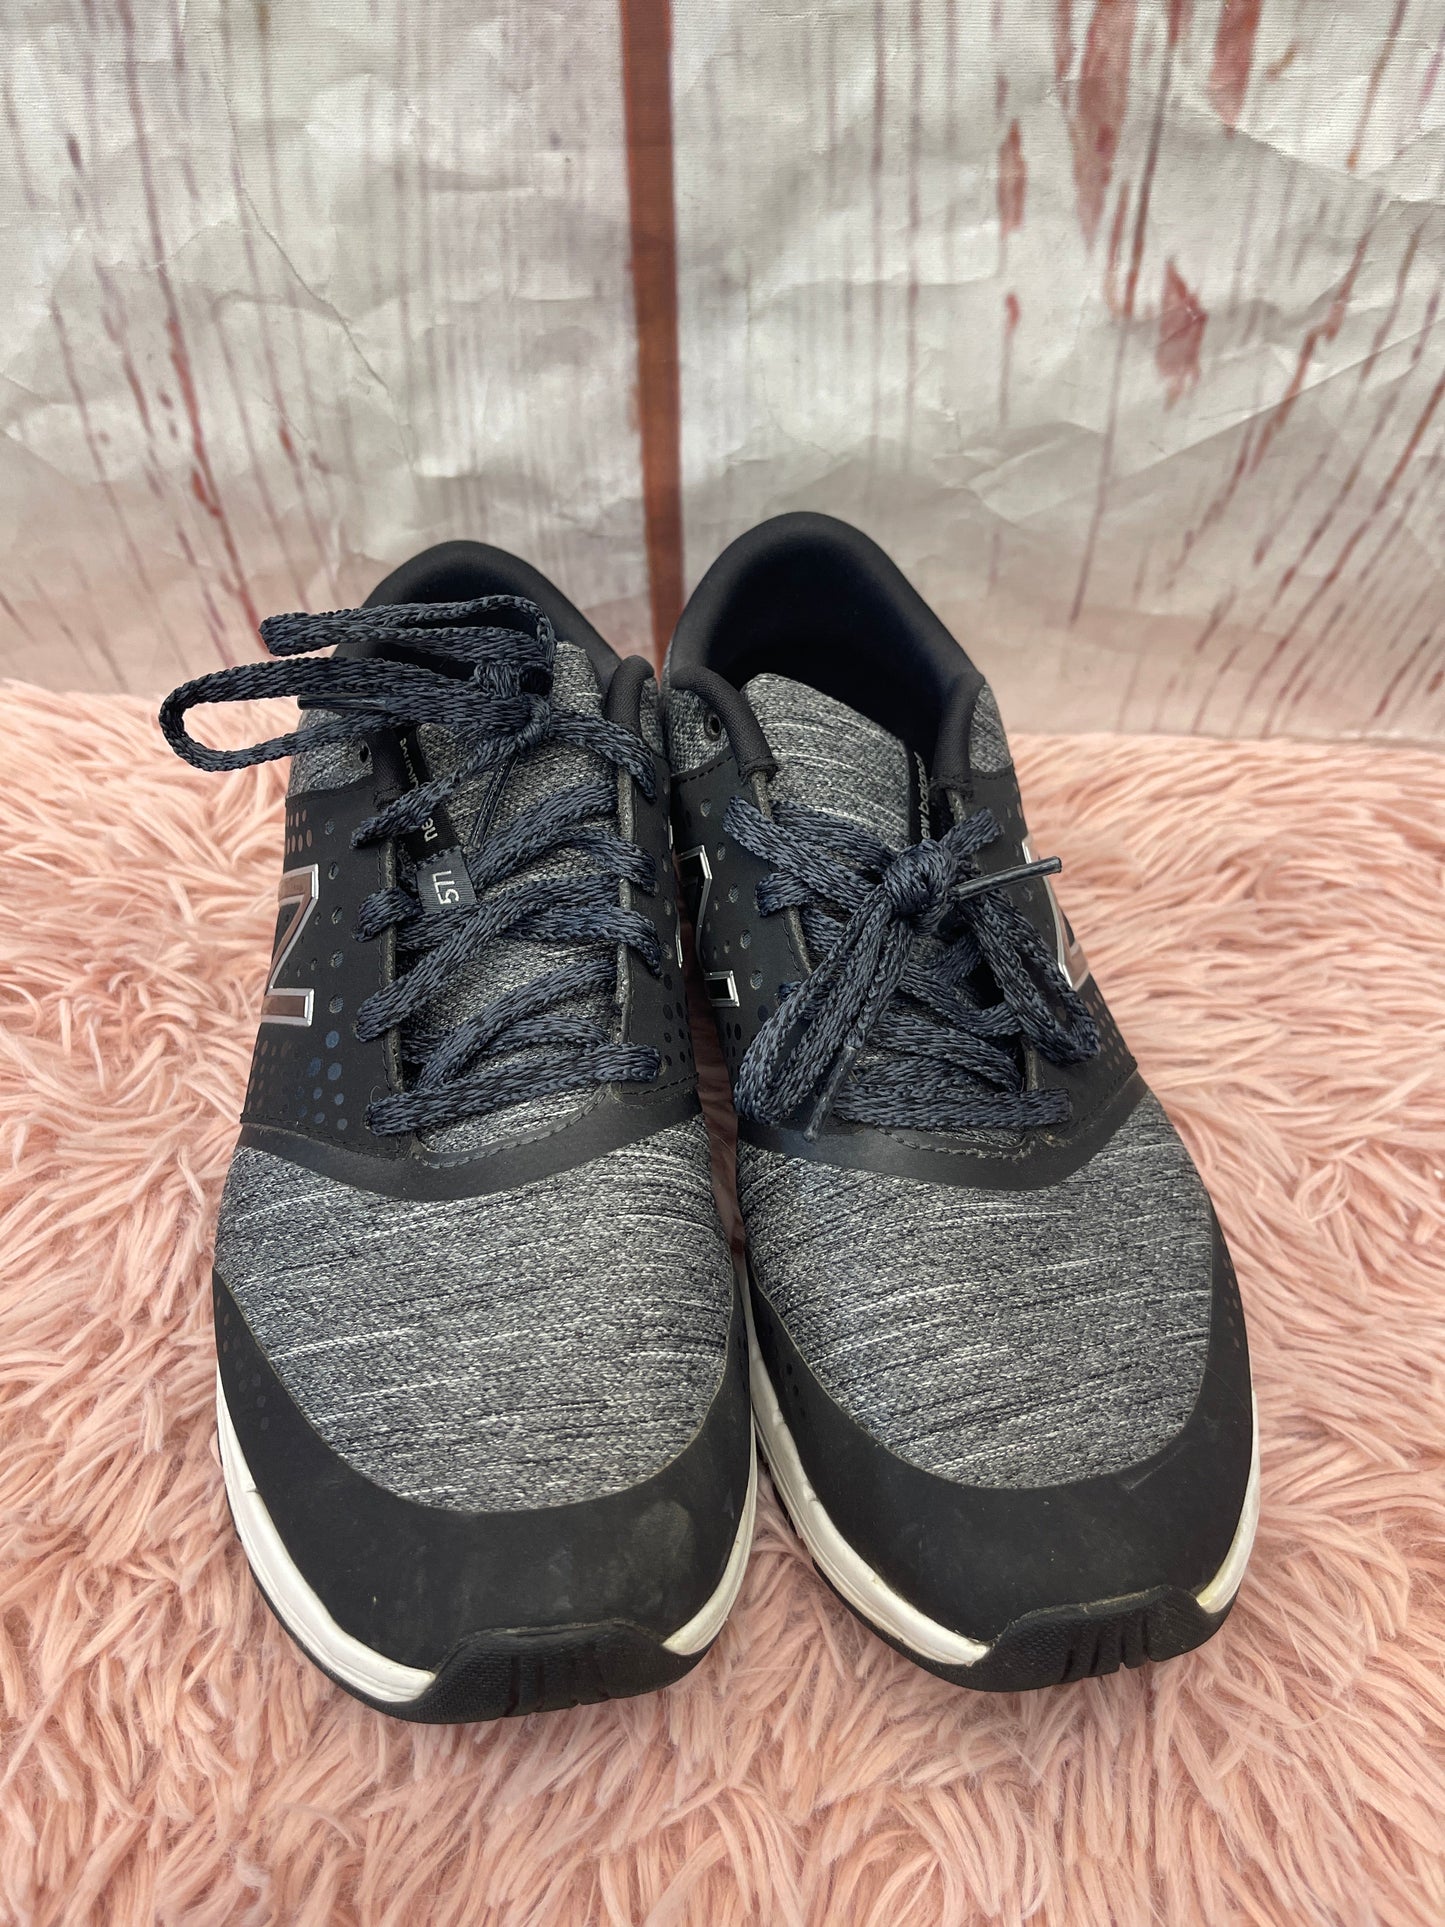 Black Shoes Athletic New Balance, Size 8.5